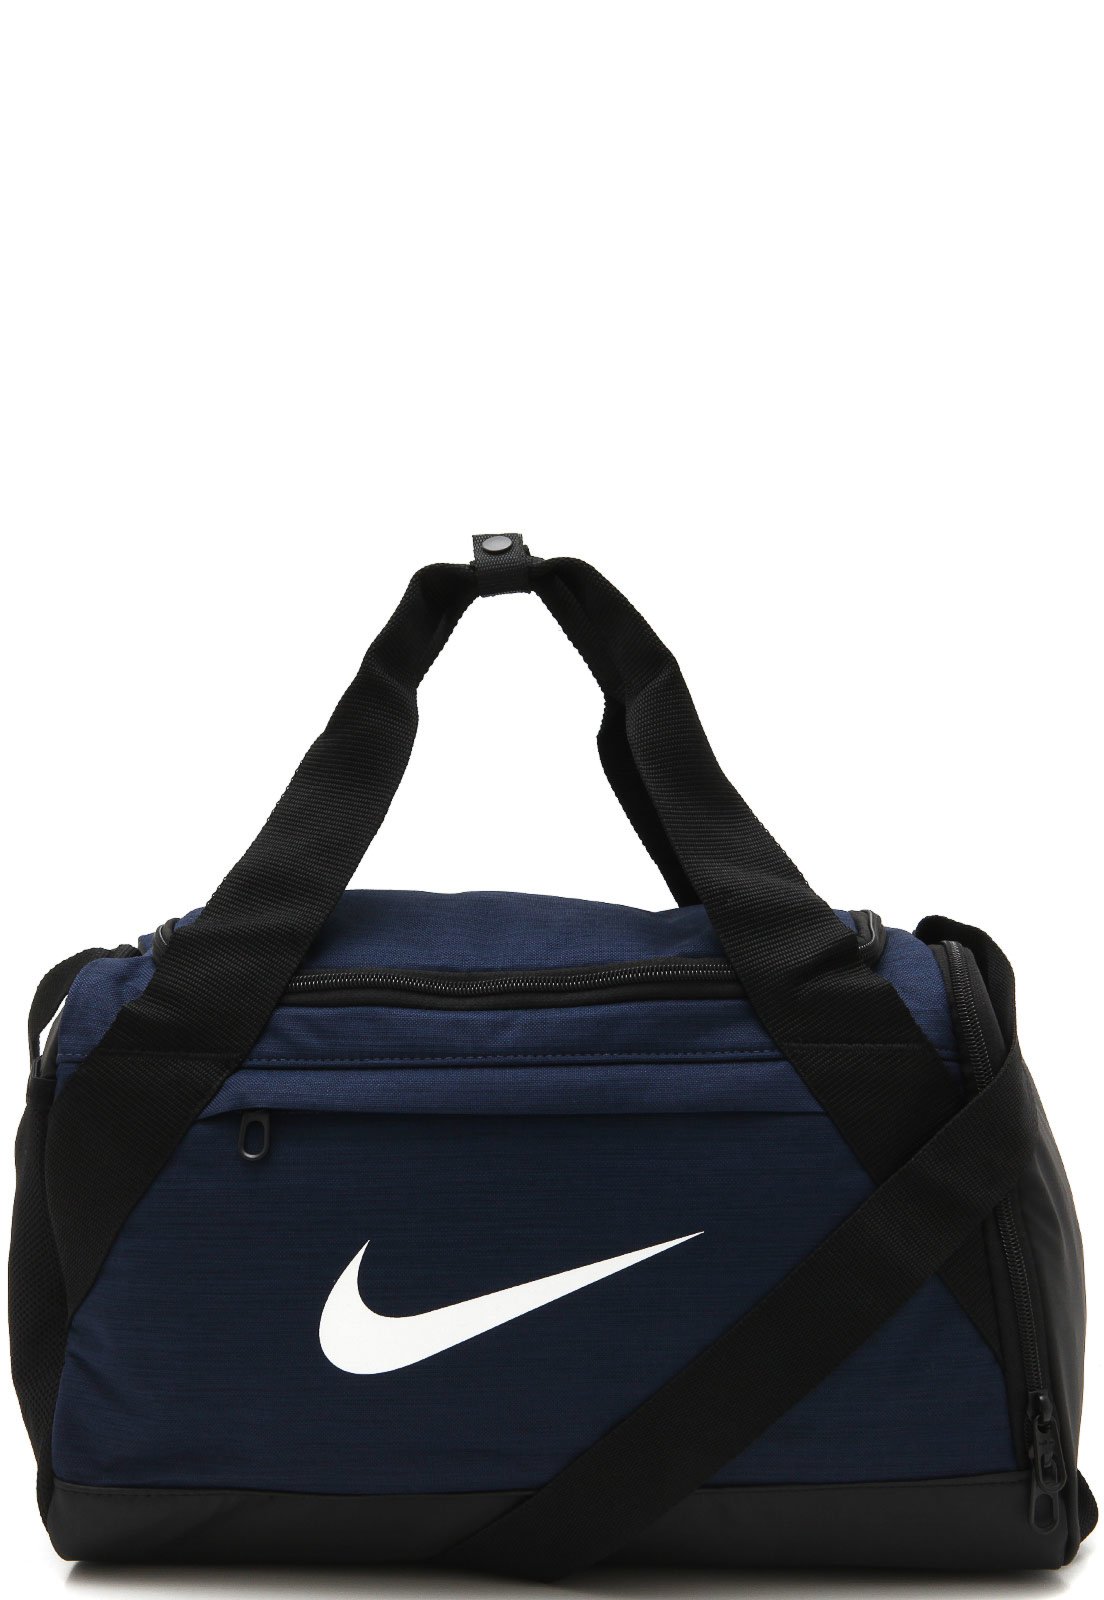 Bolsa Nike Brasilia XS Duff Azul-Marinho - Compre Agora